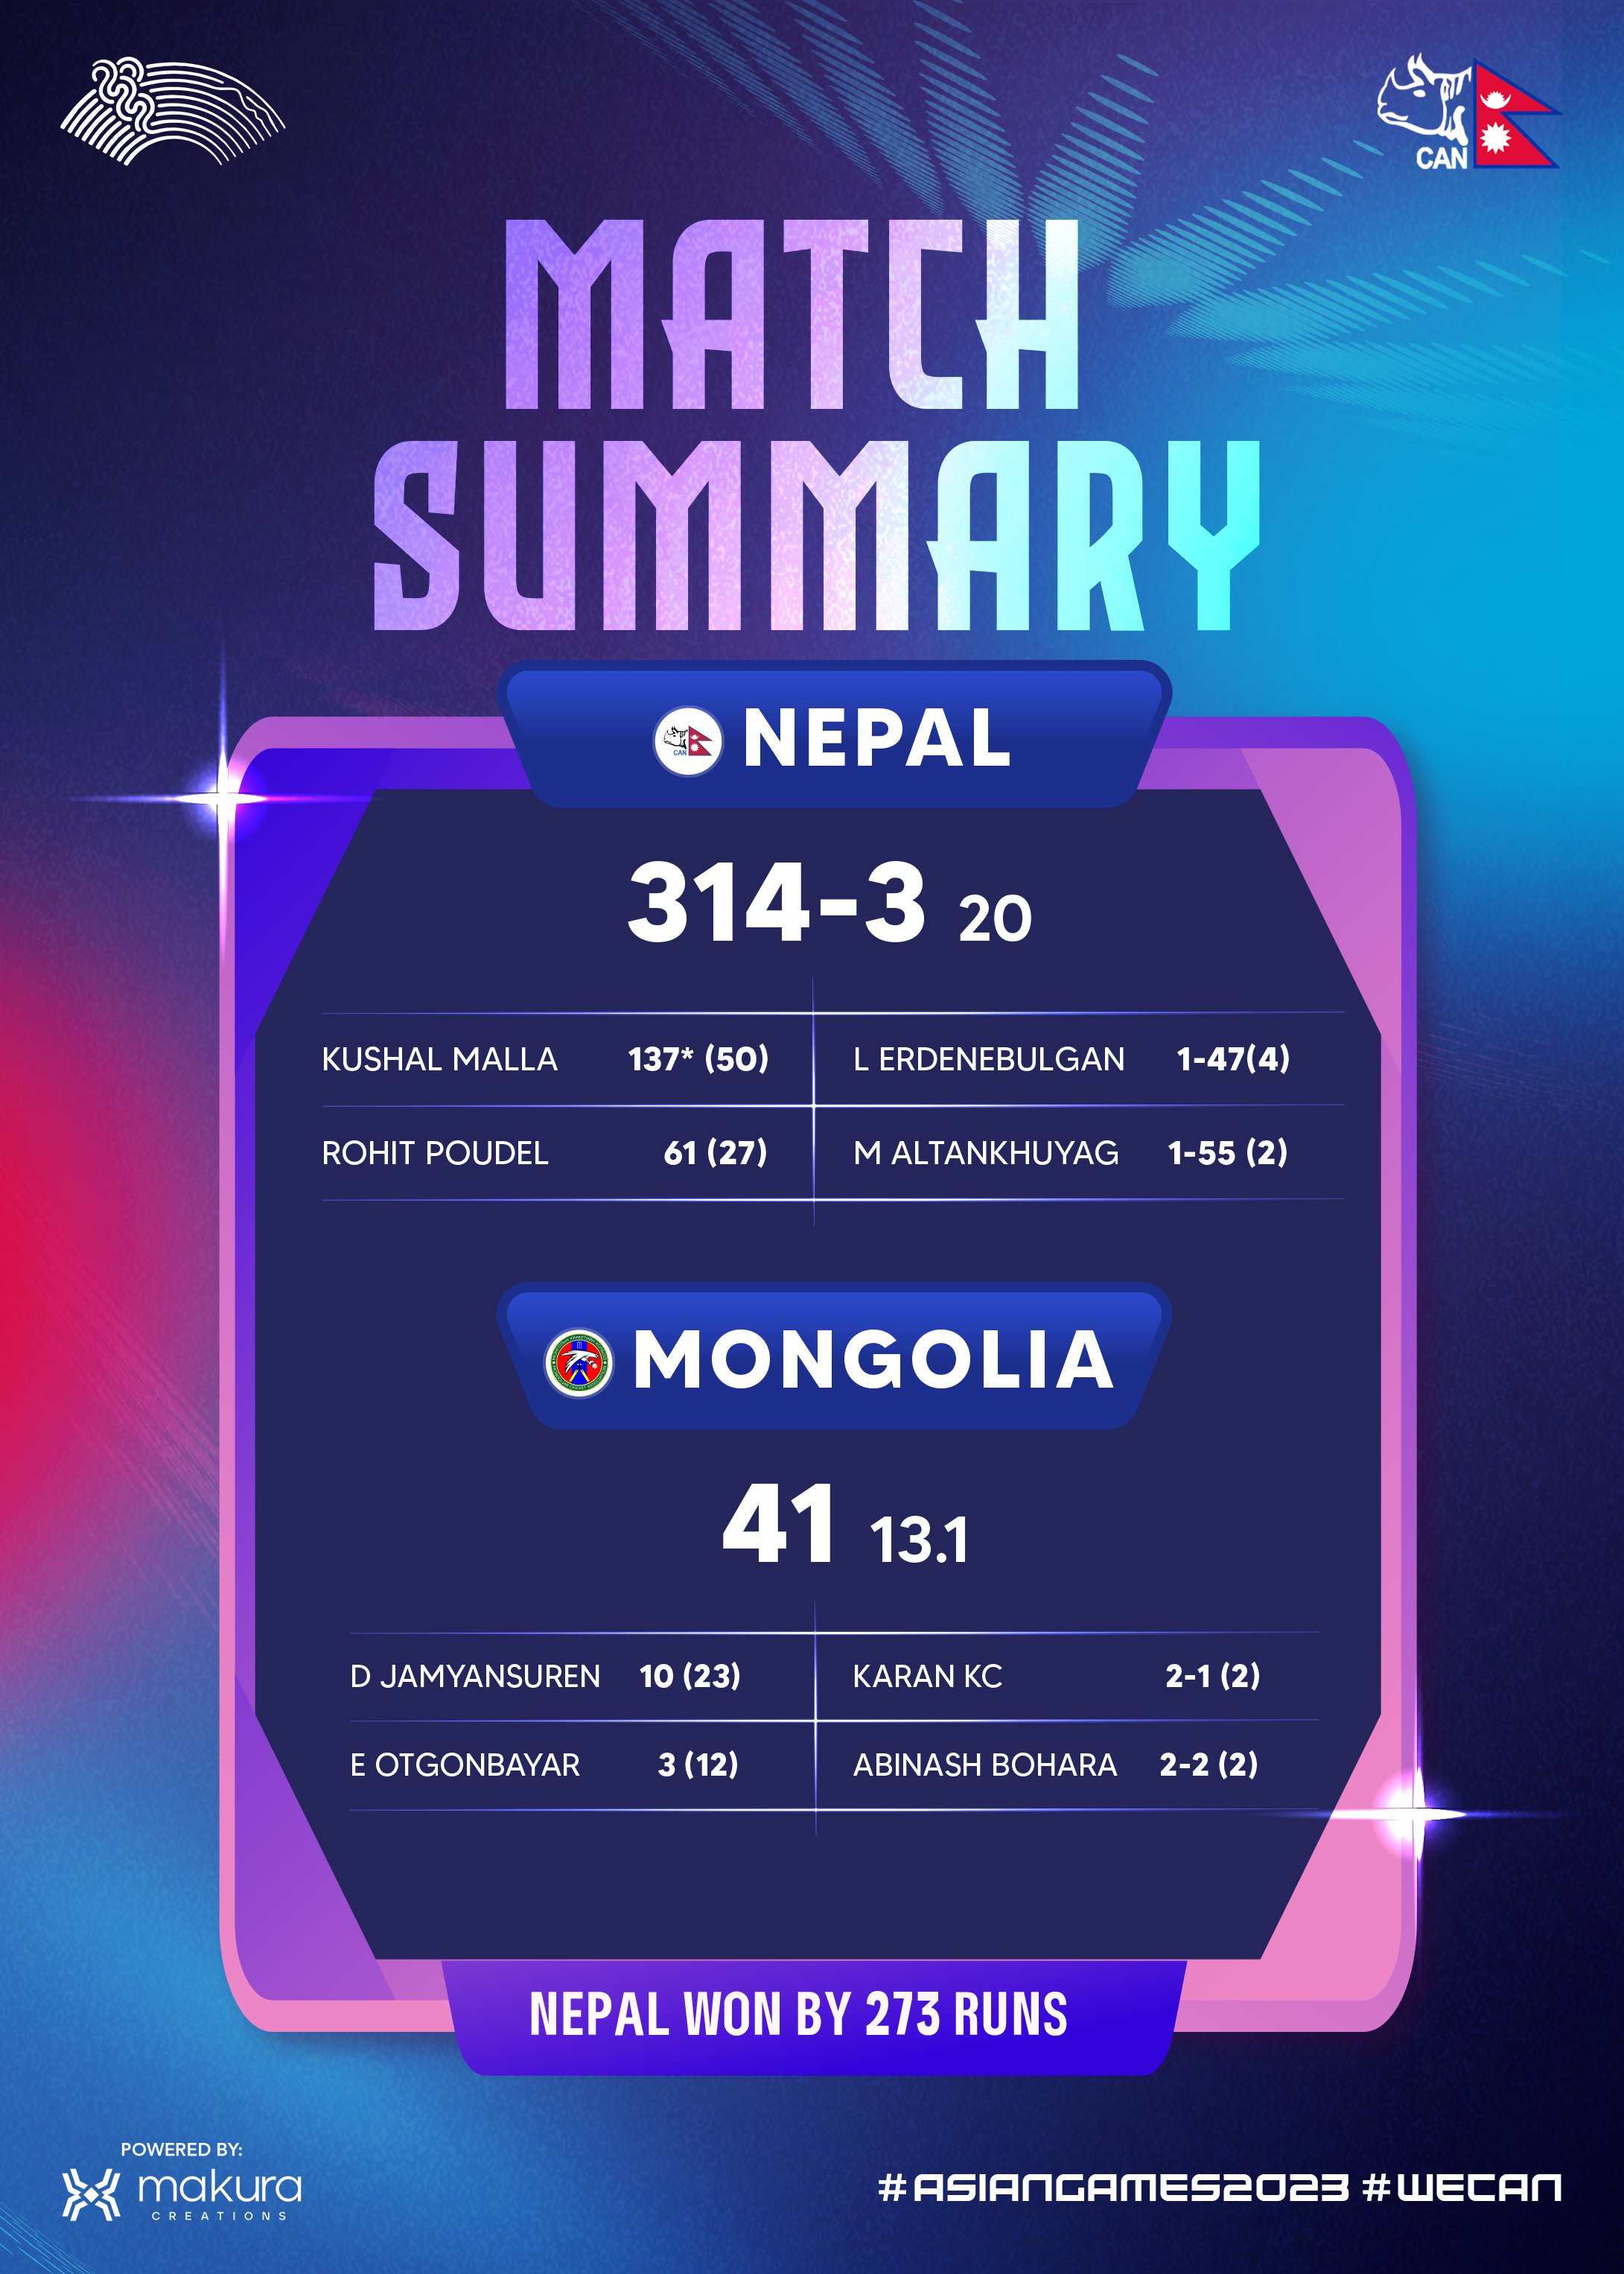 कीर्तिमानले भरियो नेपाल र मङ्गोलियाबीचको खेल